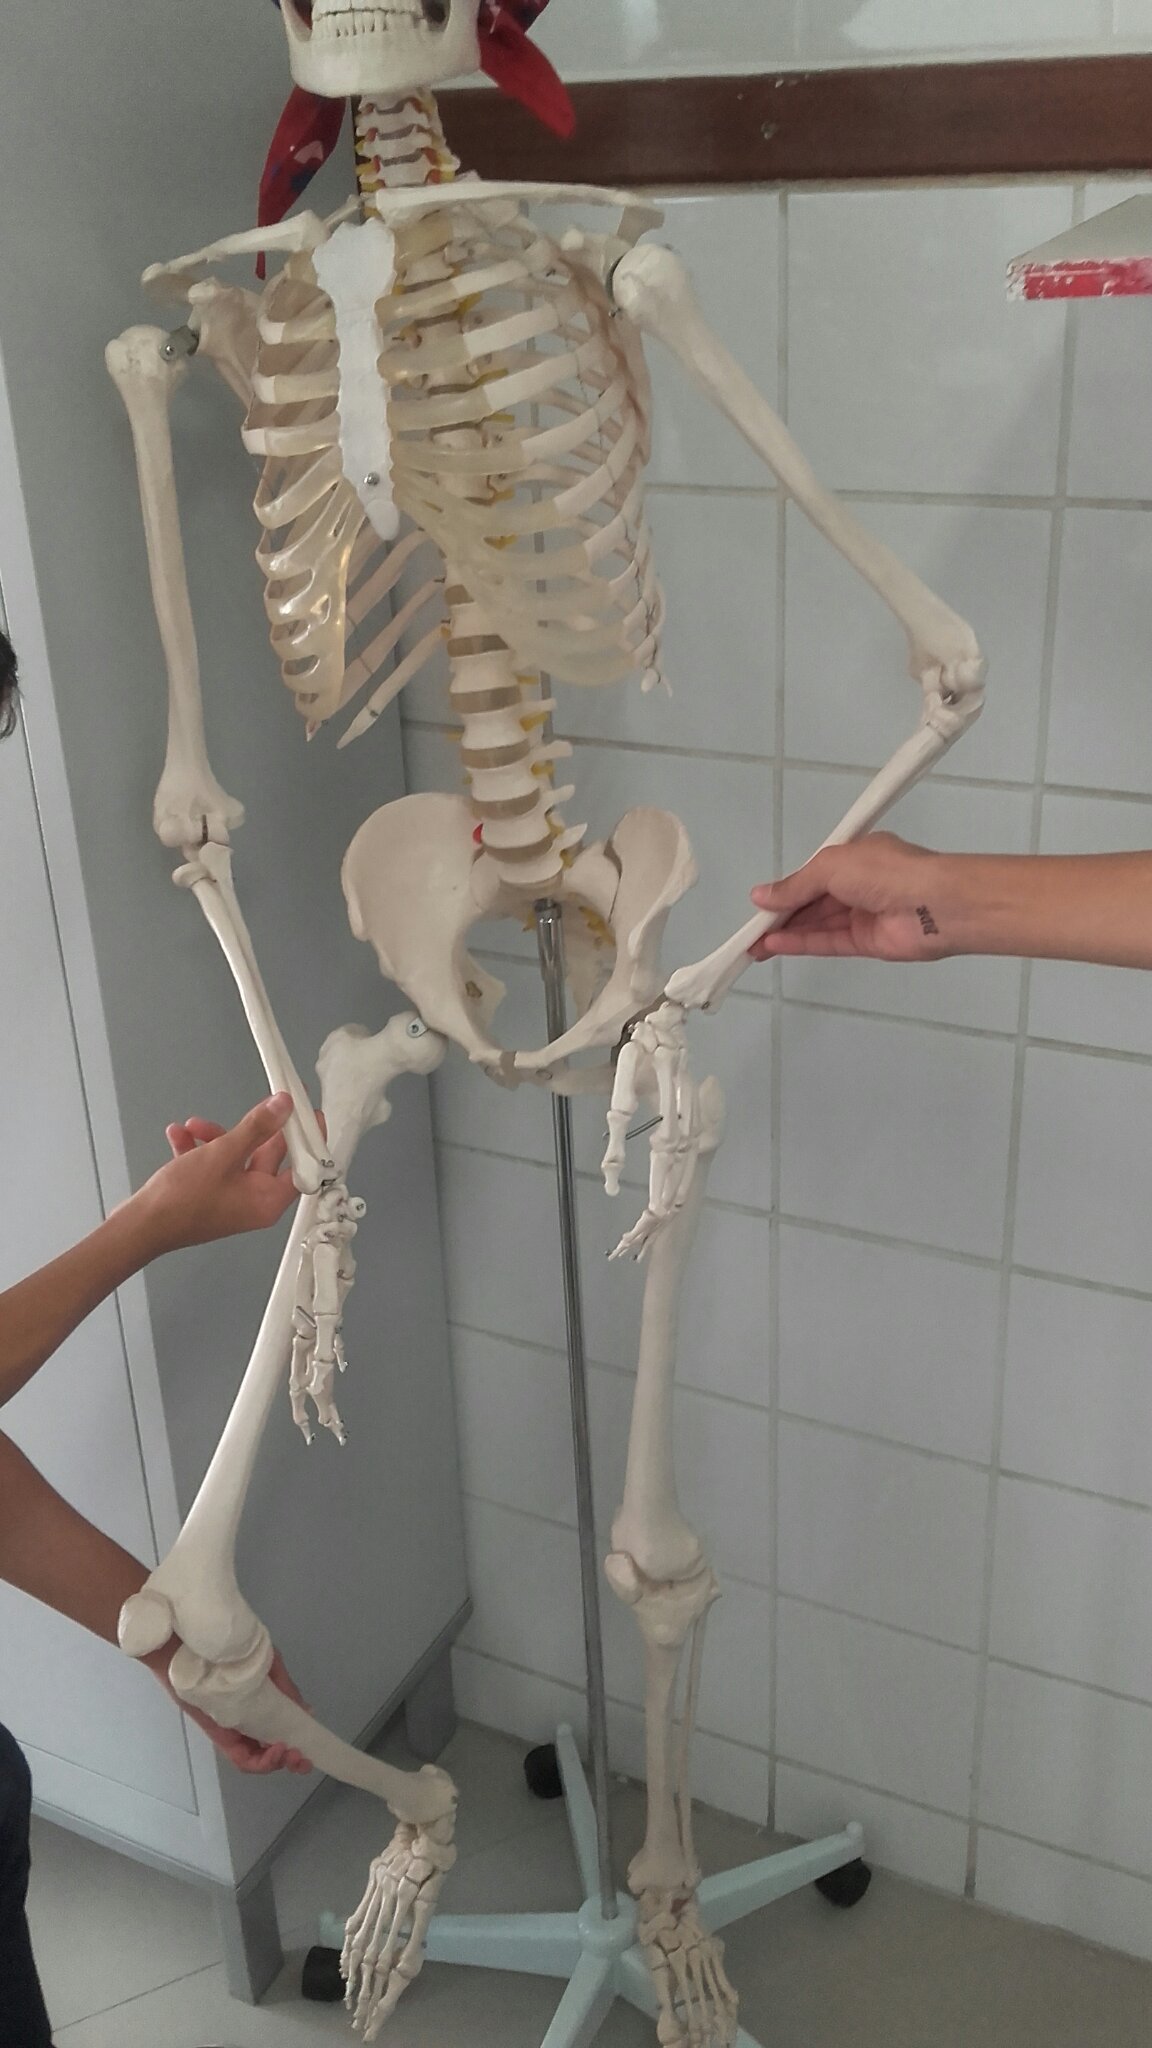 Ensinando o nosso amiguinho esqueleto a sarrar - meme